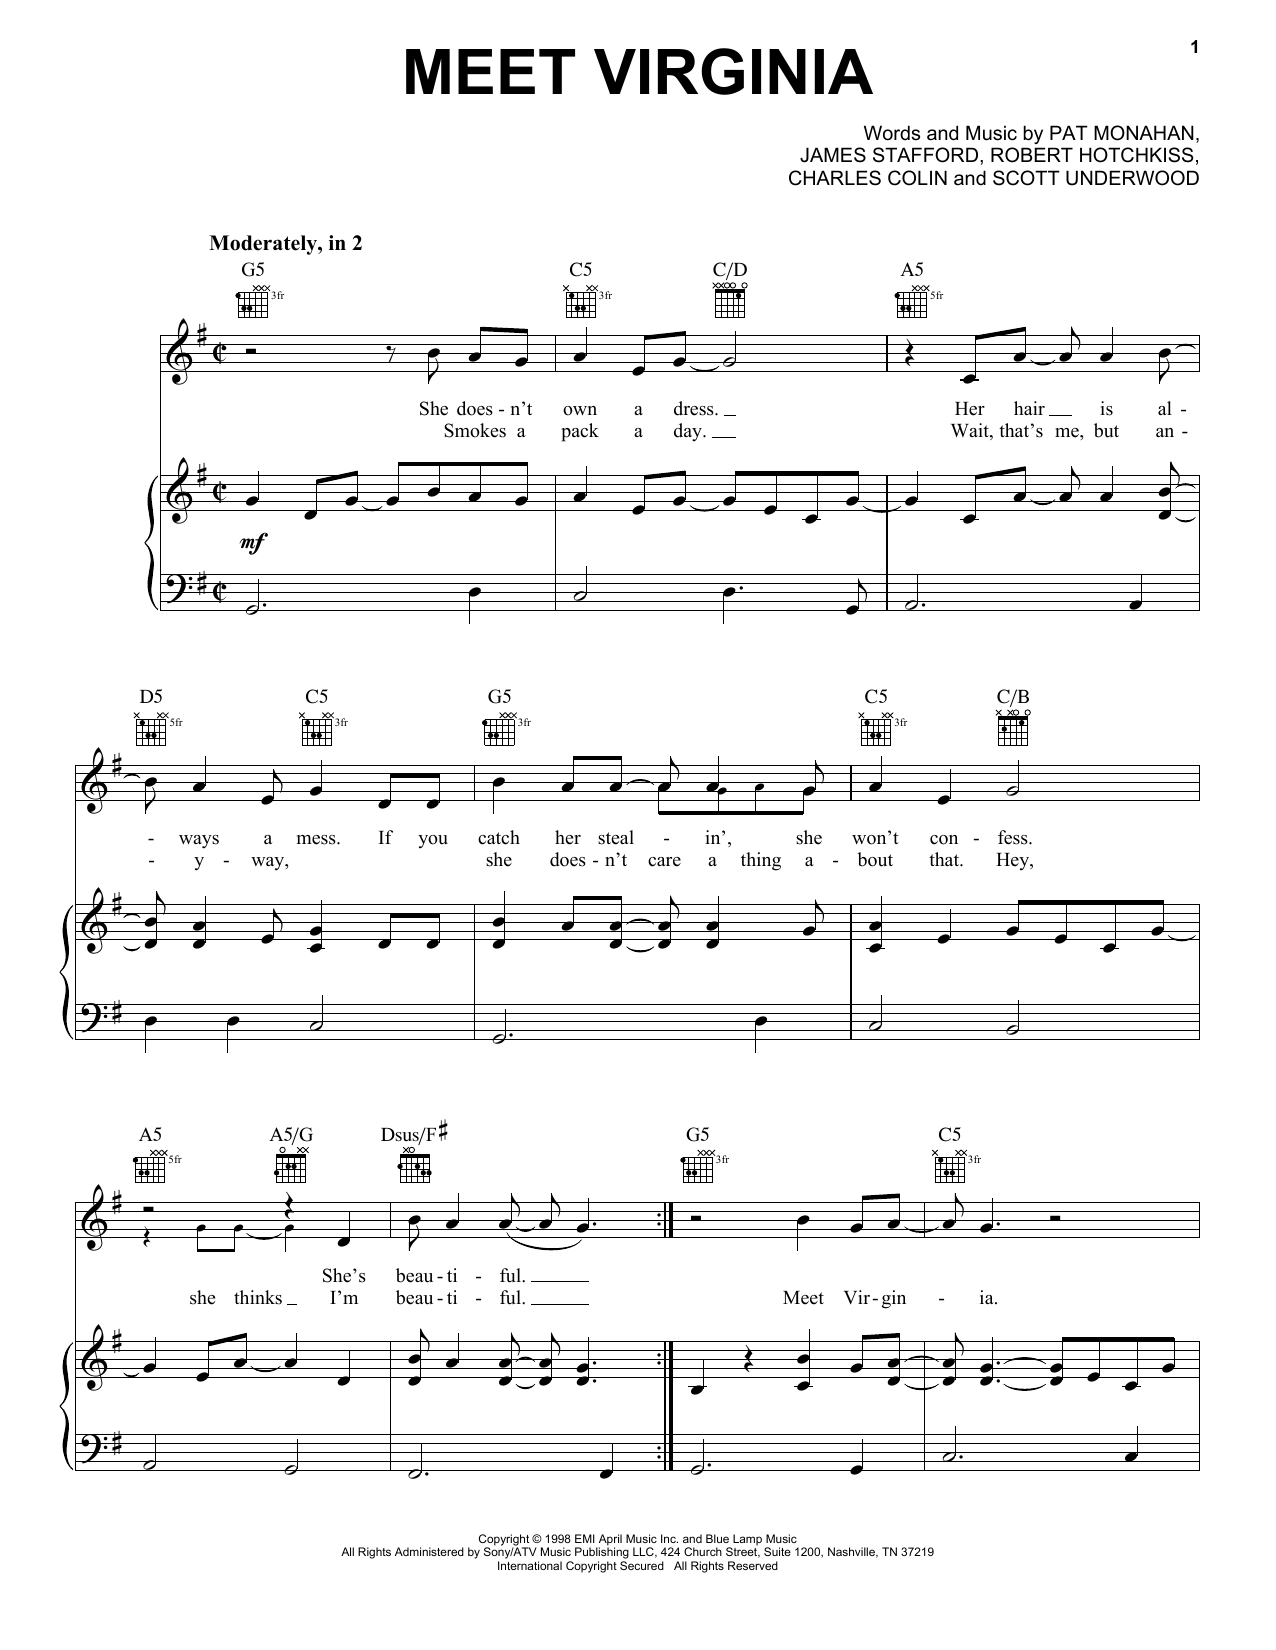 Train Meet Virginia Sheet Music Notes & Chords for Ukulele Chords/Lyrics - Download or Print PDF